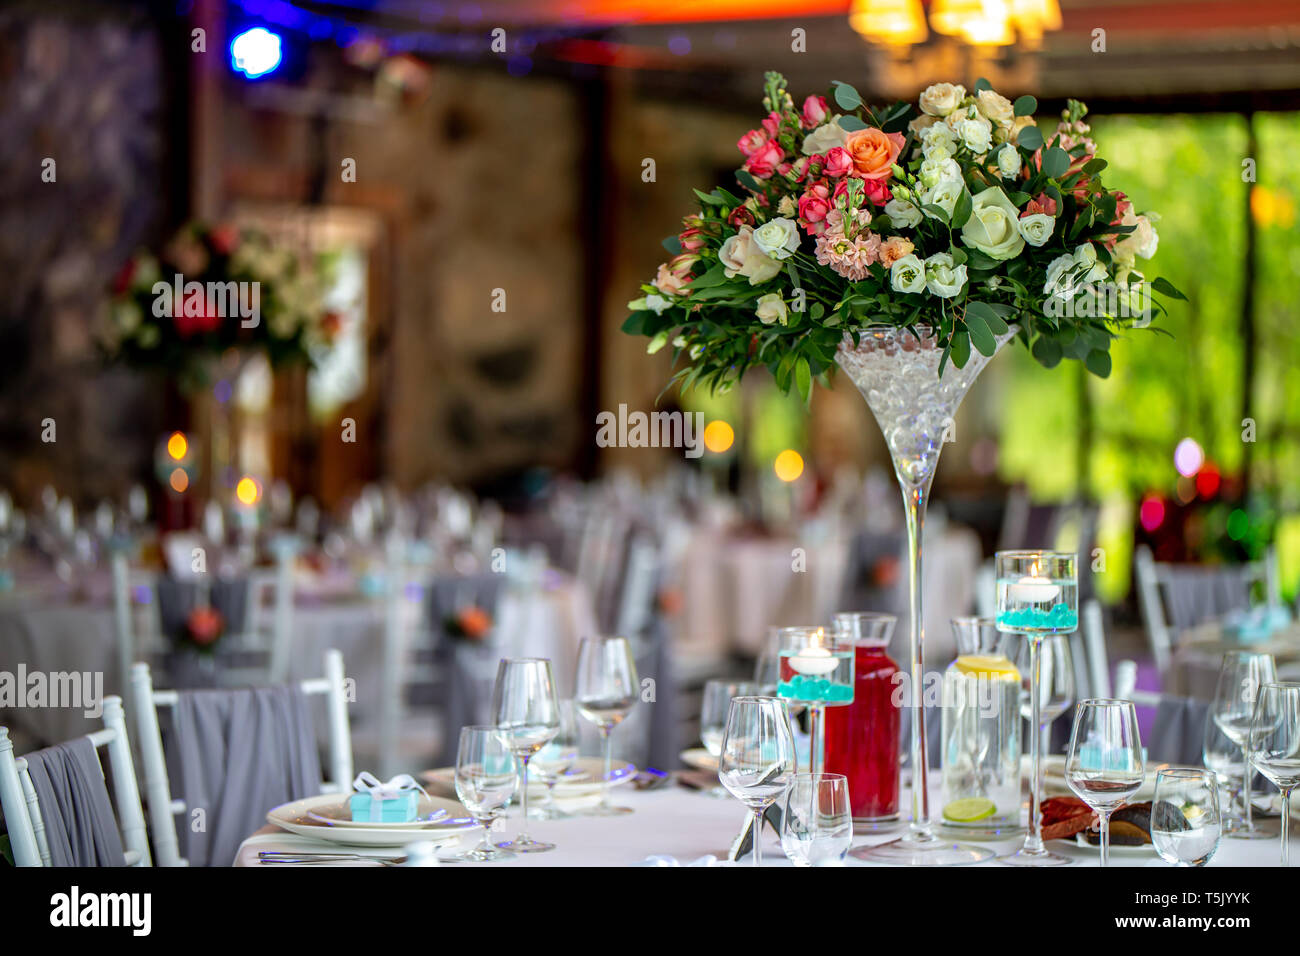 Decoración de la mesa de bodas. Precioso ramo de flores en un jarrón sobre la mesa, junto con platos, vasos y cajas de regalo. Bouquet de flores, vasos, gif Foto de stock